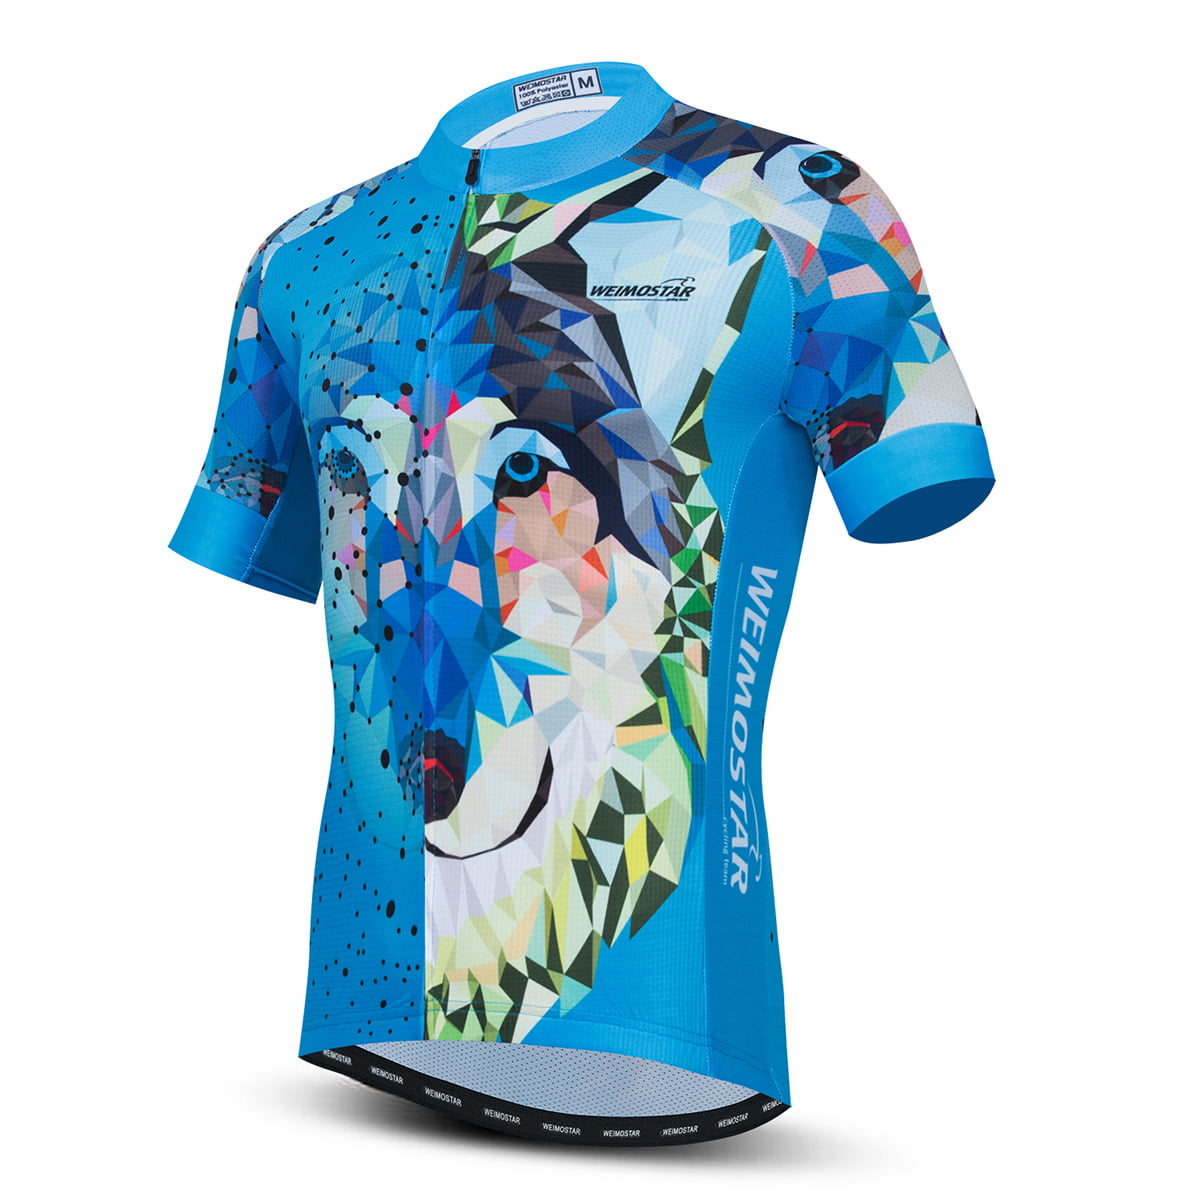 Men's Cycling Jersey Clothing Bicycle Sportswear Short Sleeve Bike Shirt Top X44 